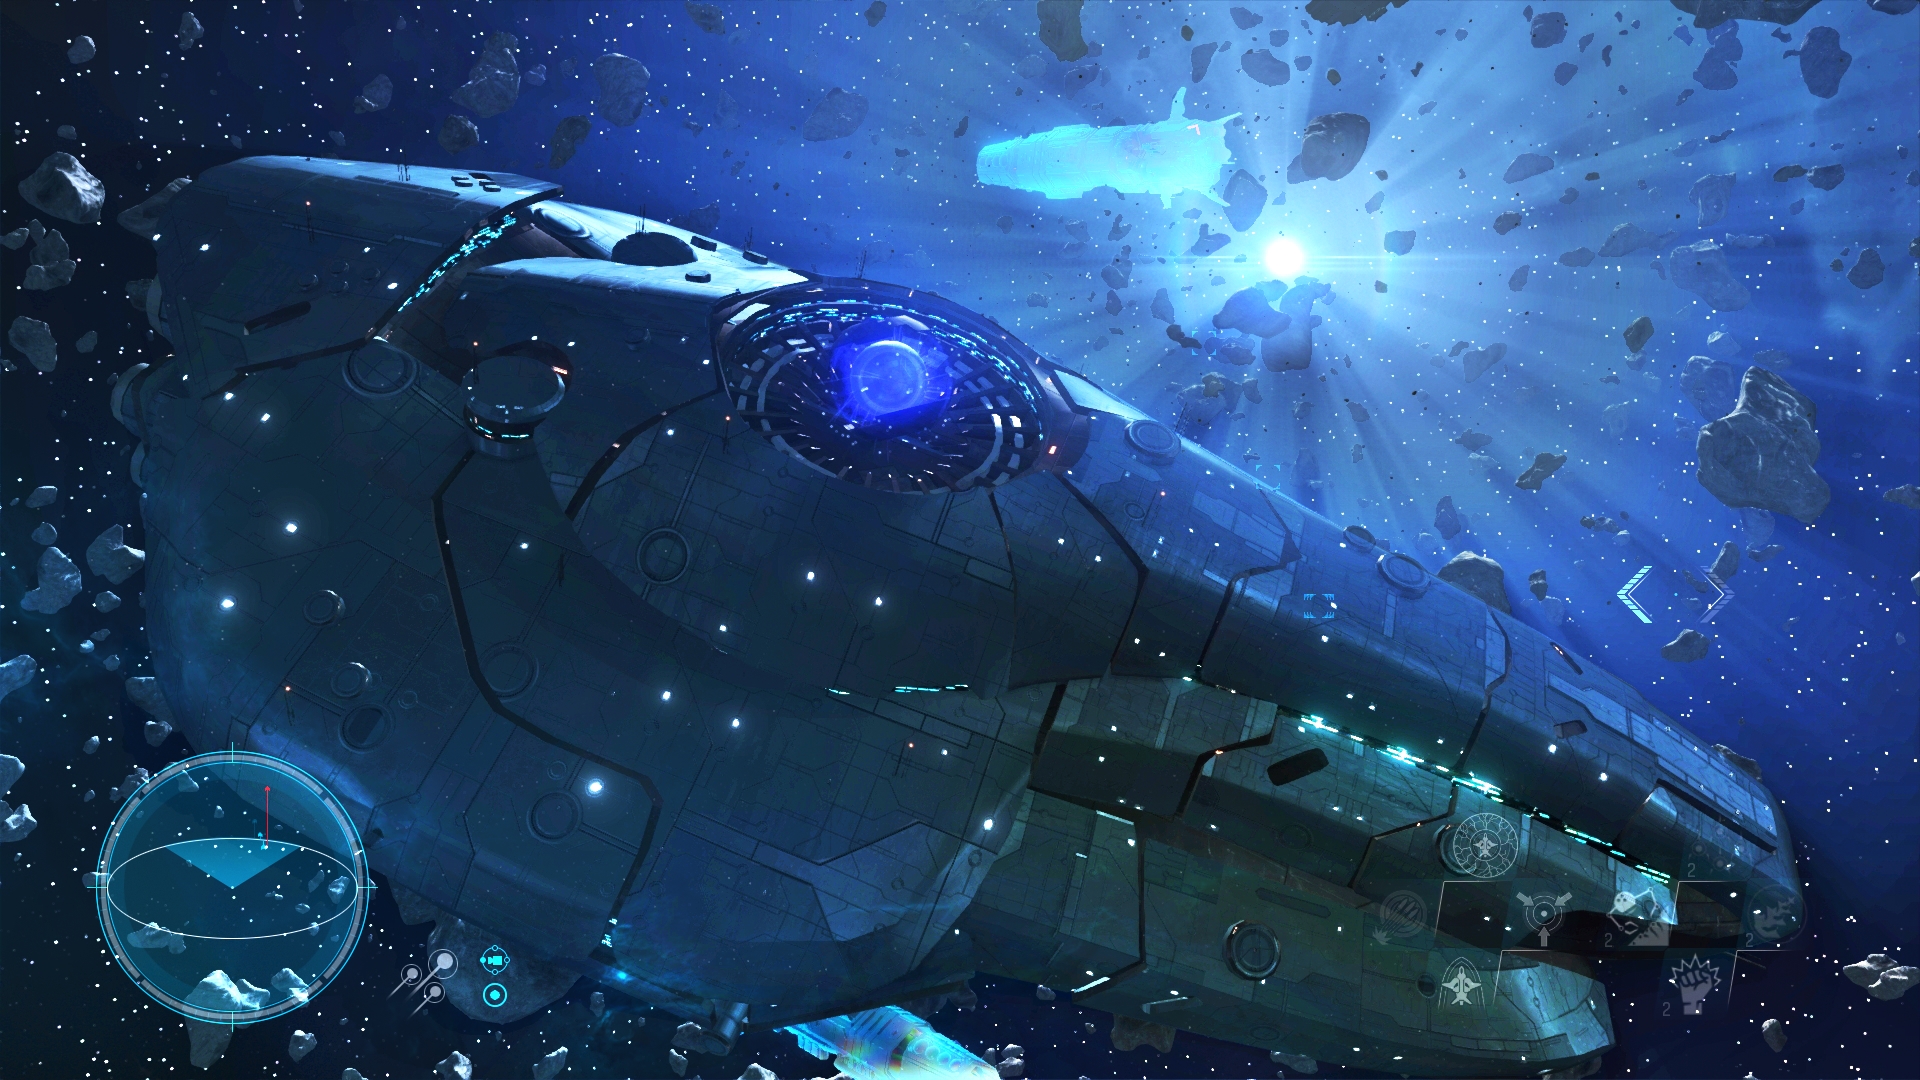 Steam で 66 オフ Starpoint Gemini Warlords Titans Return